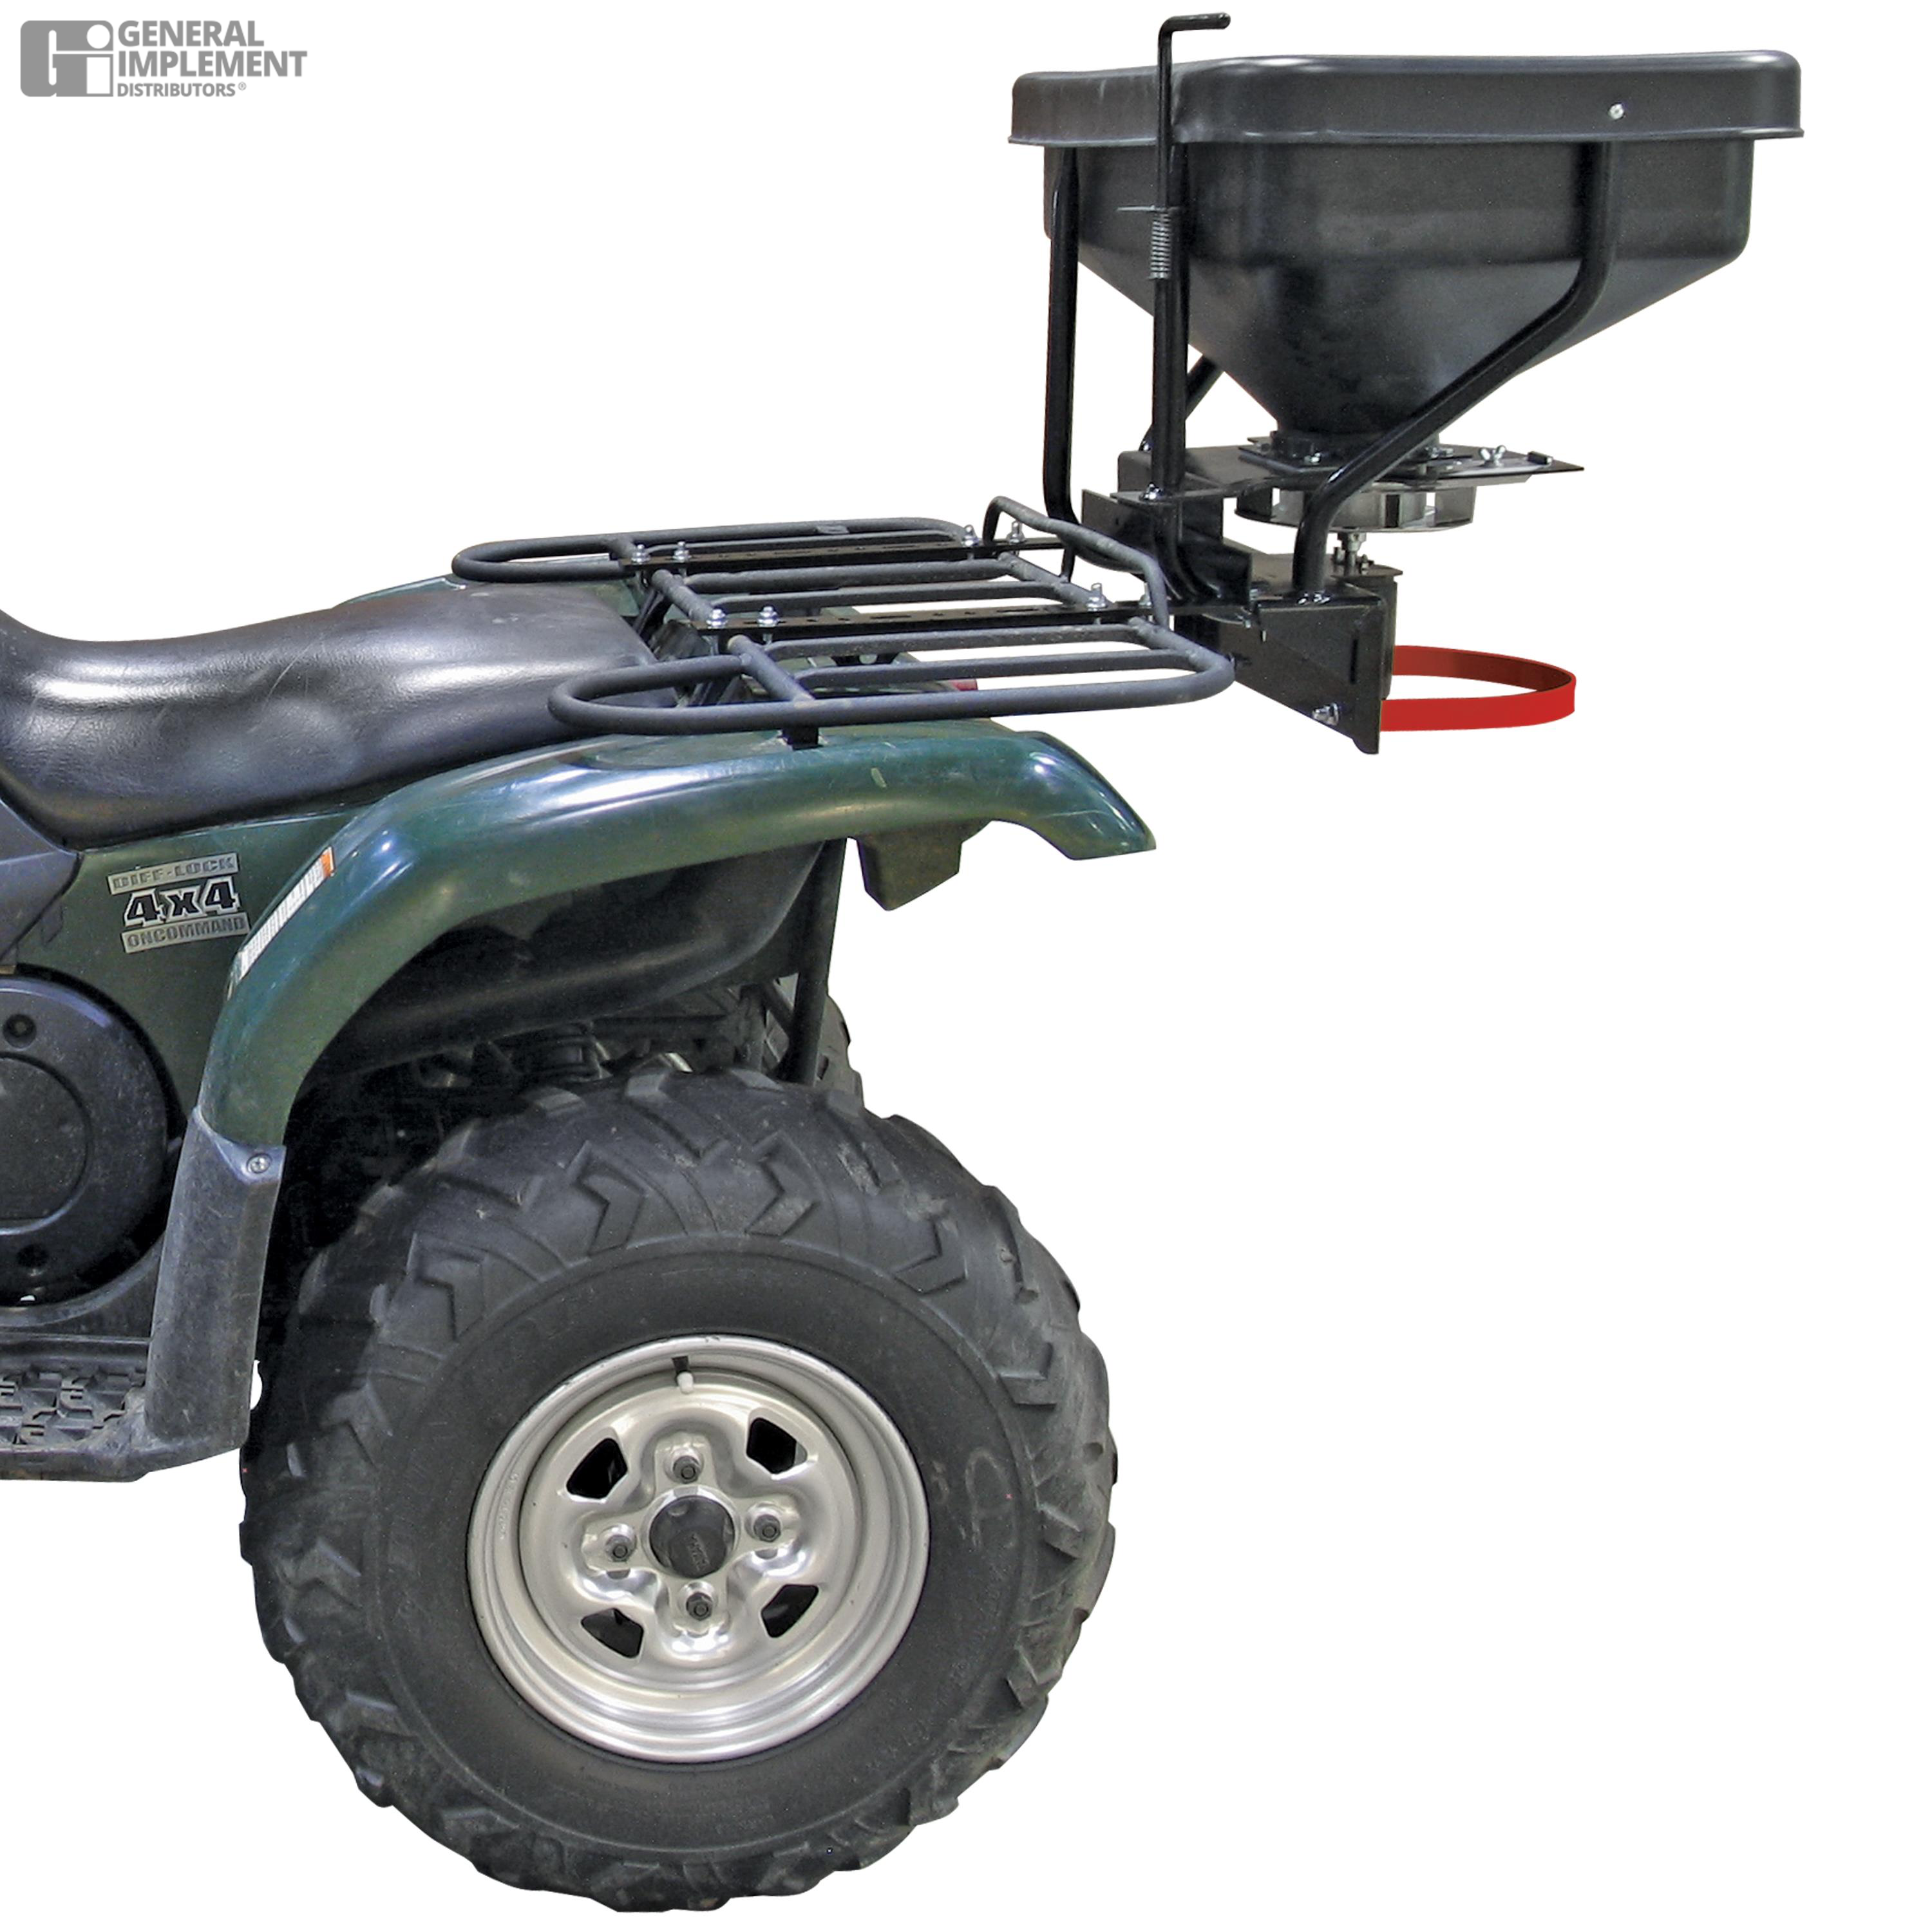 FIMCO ATV DRY MATERIAL 12 VOLT SPREADER